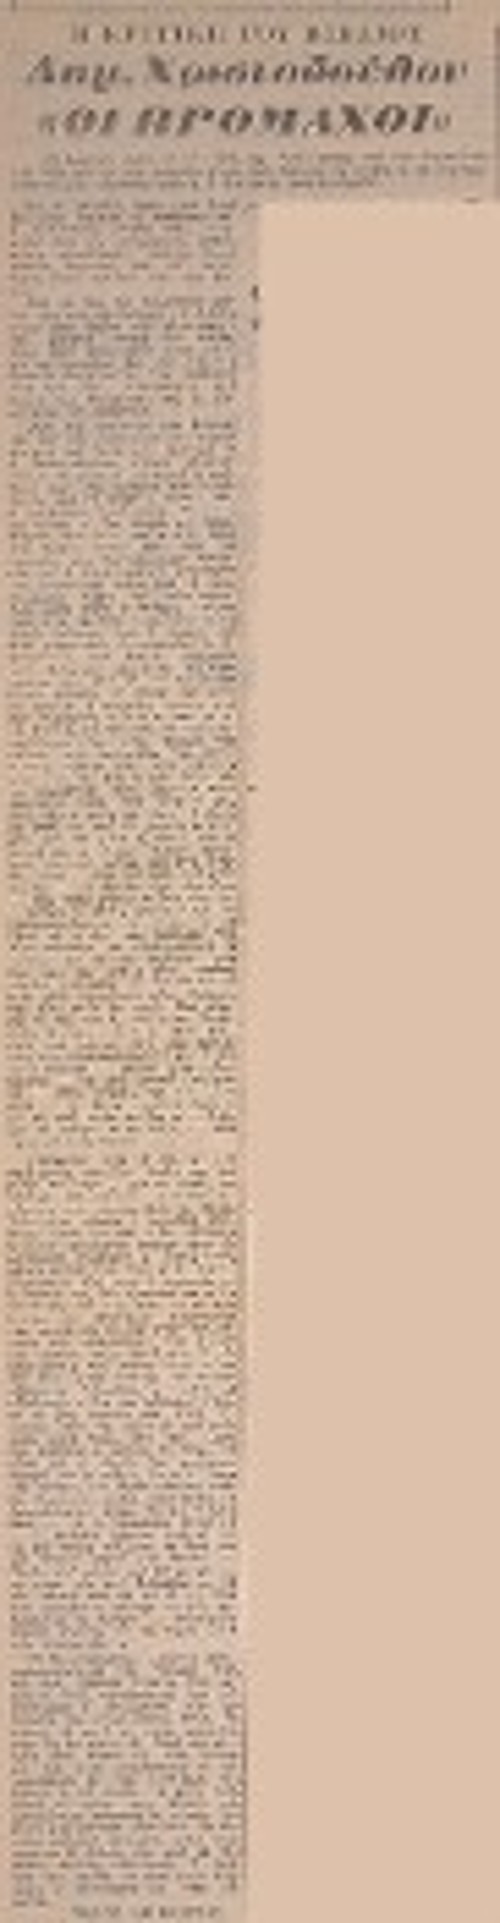 Ο Τάσος Λειβαδίτης, εξόριστος, το 1951, στον Αη - Στράτη και τα δύο αποκόμματα με τις κριτικές του στην προδικτατορική εφημερίδα «Η Αυγή» για τις συλλογές «Πάροδος» και «Πρόμαχοι»